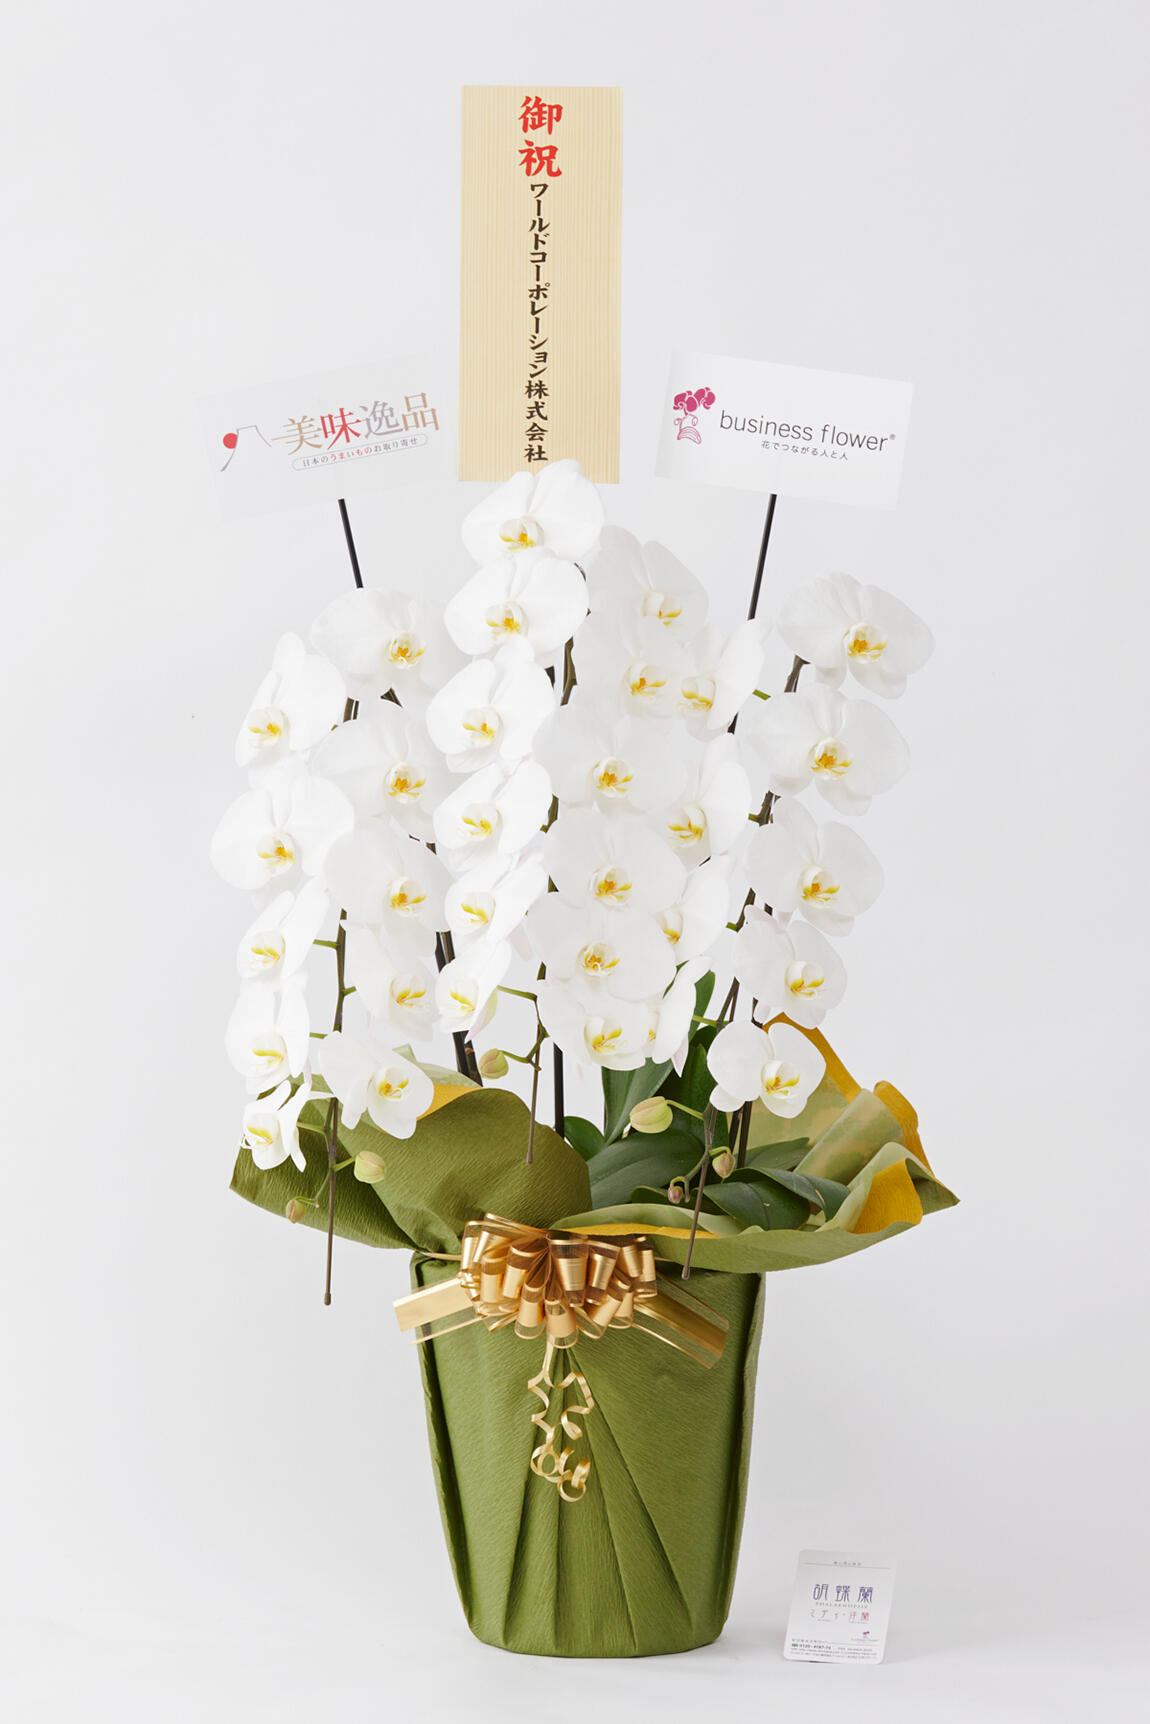 <p>お祝い花の通販サイトビジネスフラワーでは、別途無料でお名札をお付けできるので、フォーマルなビジネスシーンでも贈りやすく、会って直接お祝い花を渡すことができない方へも気持ちを込めた贈答花をお届けする事が可能です。</p>